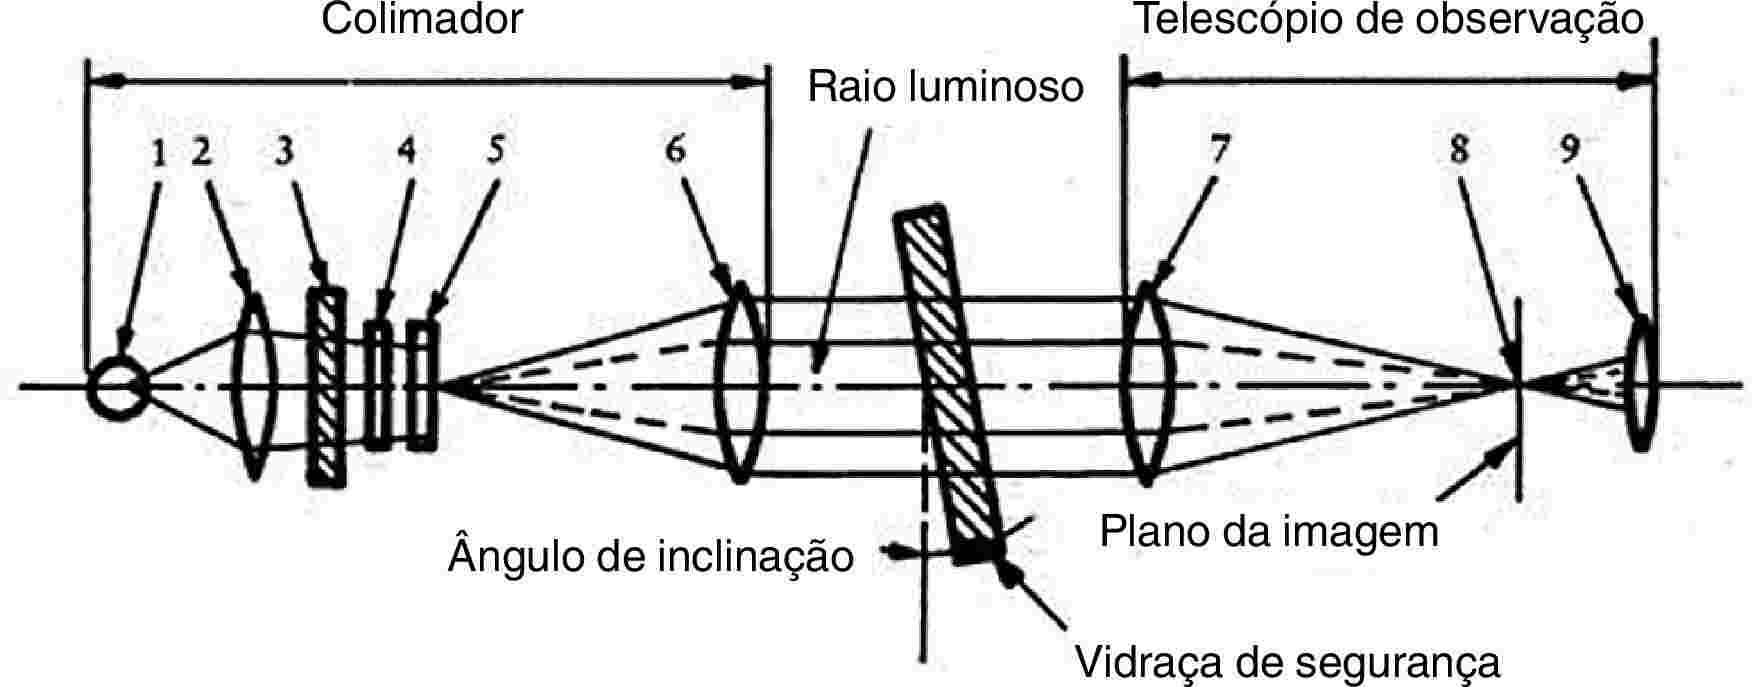 ColimadorRaio luminosoTelescópio de observaçãoÂngulo de inclinaçãoPlano da imagemVidraça de segurança